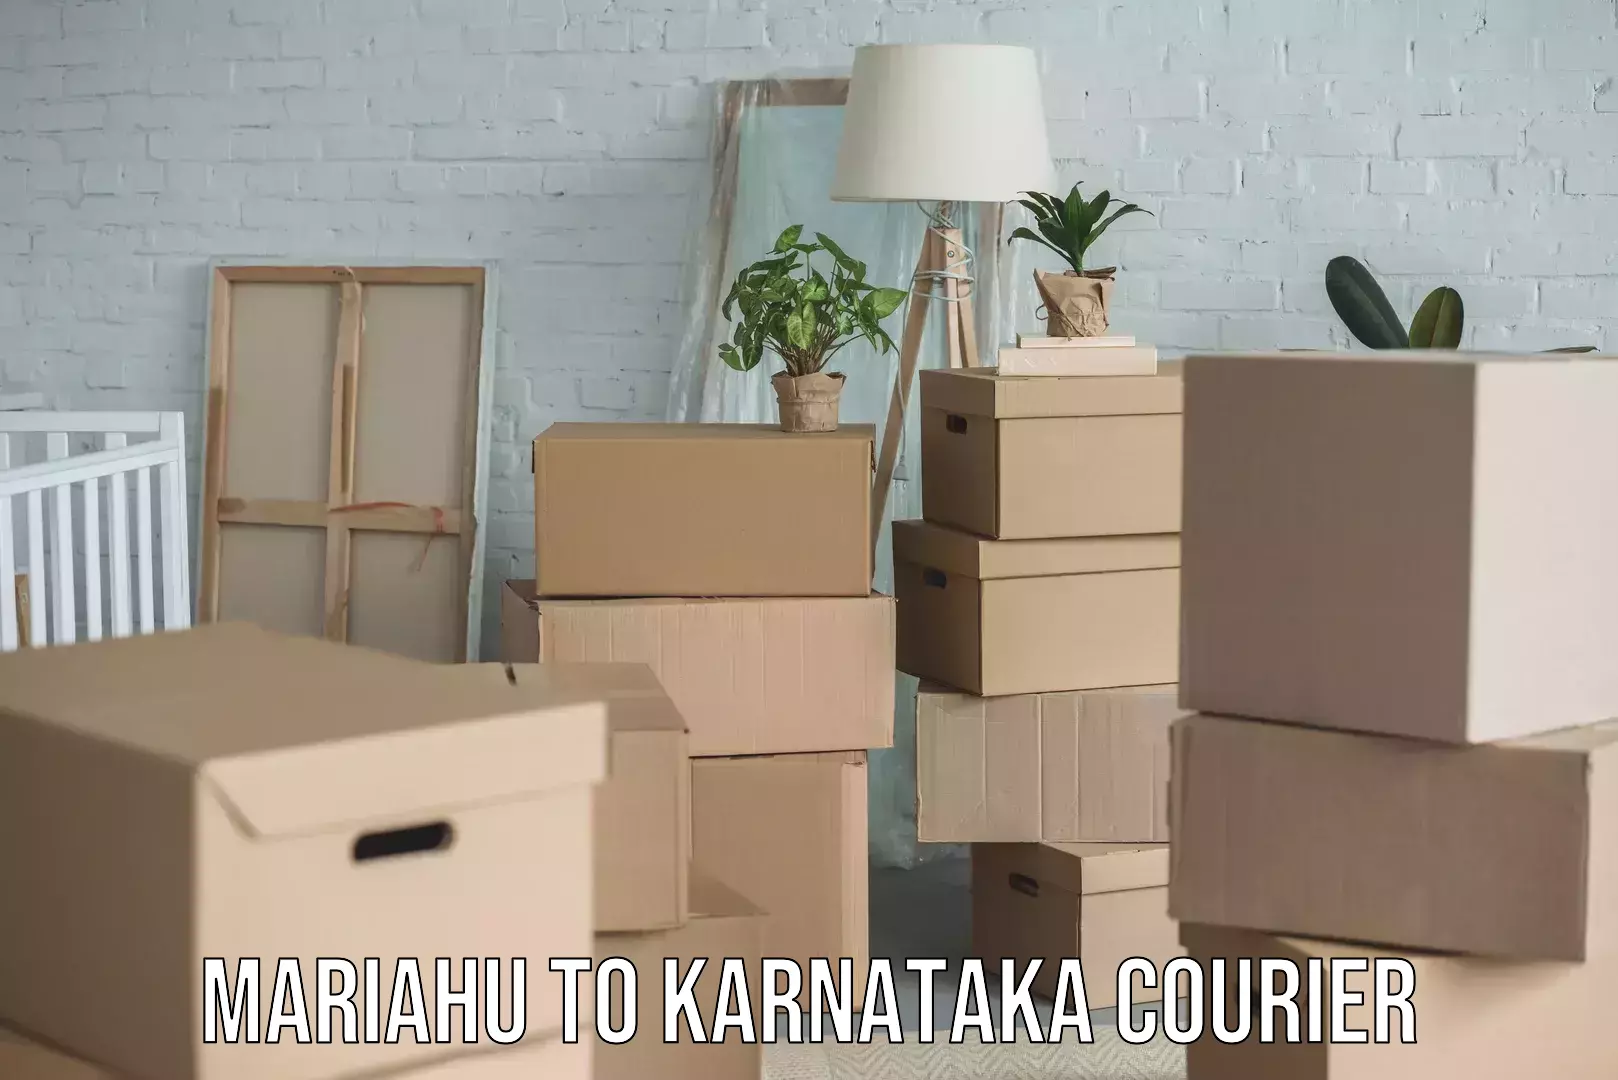 Skilled furniture movers in Mariahu to Karnataka